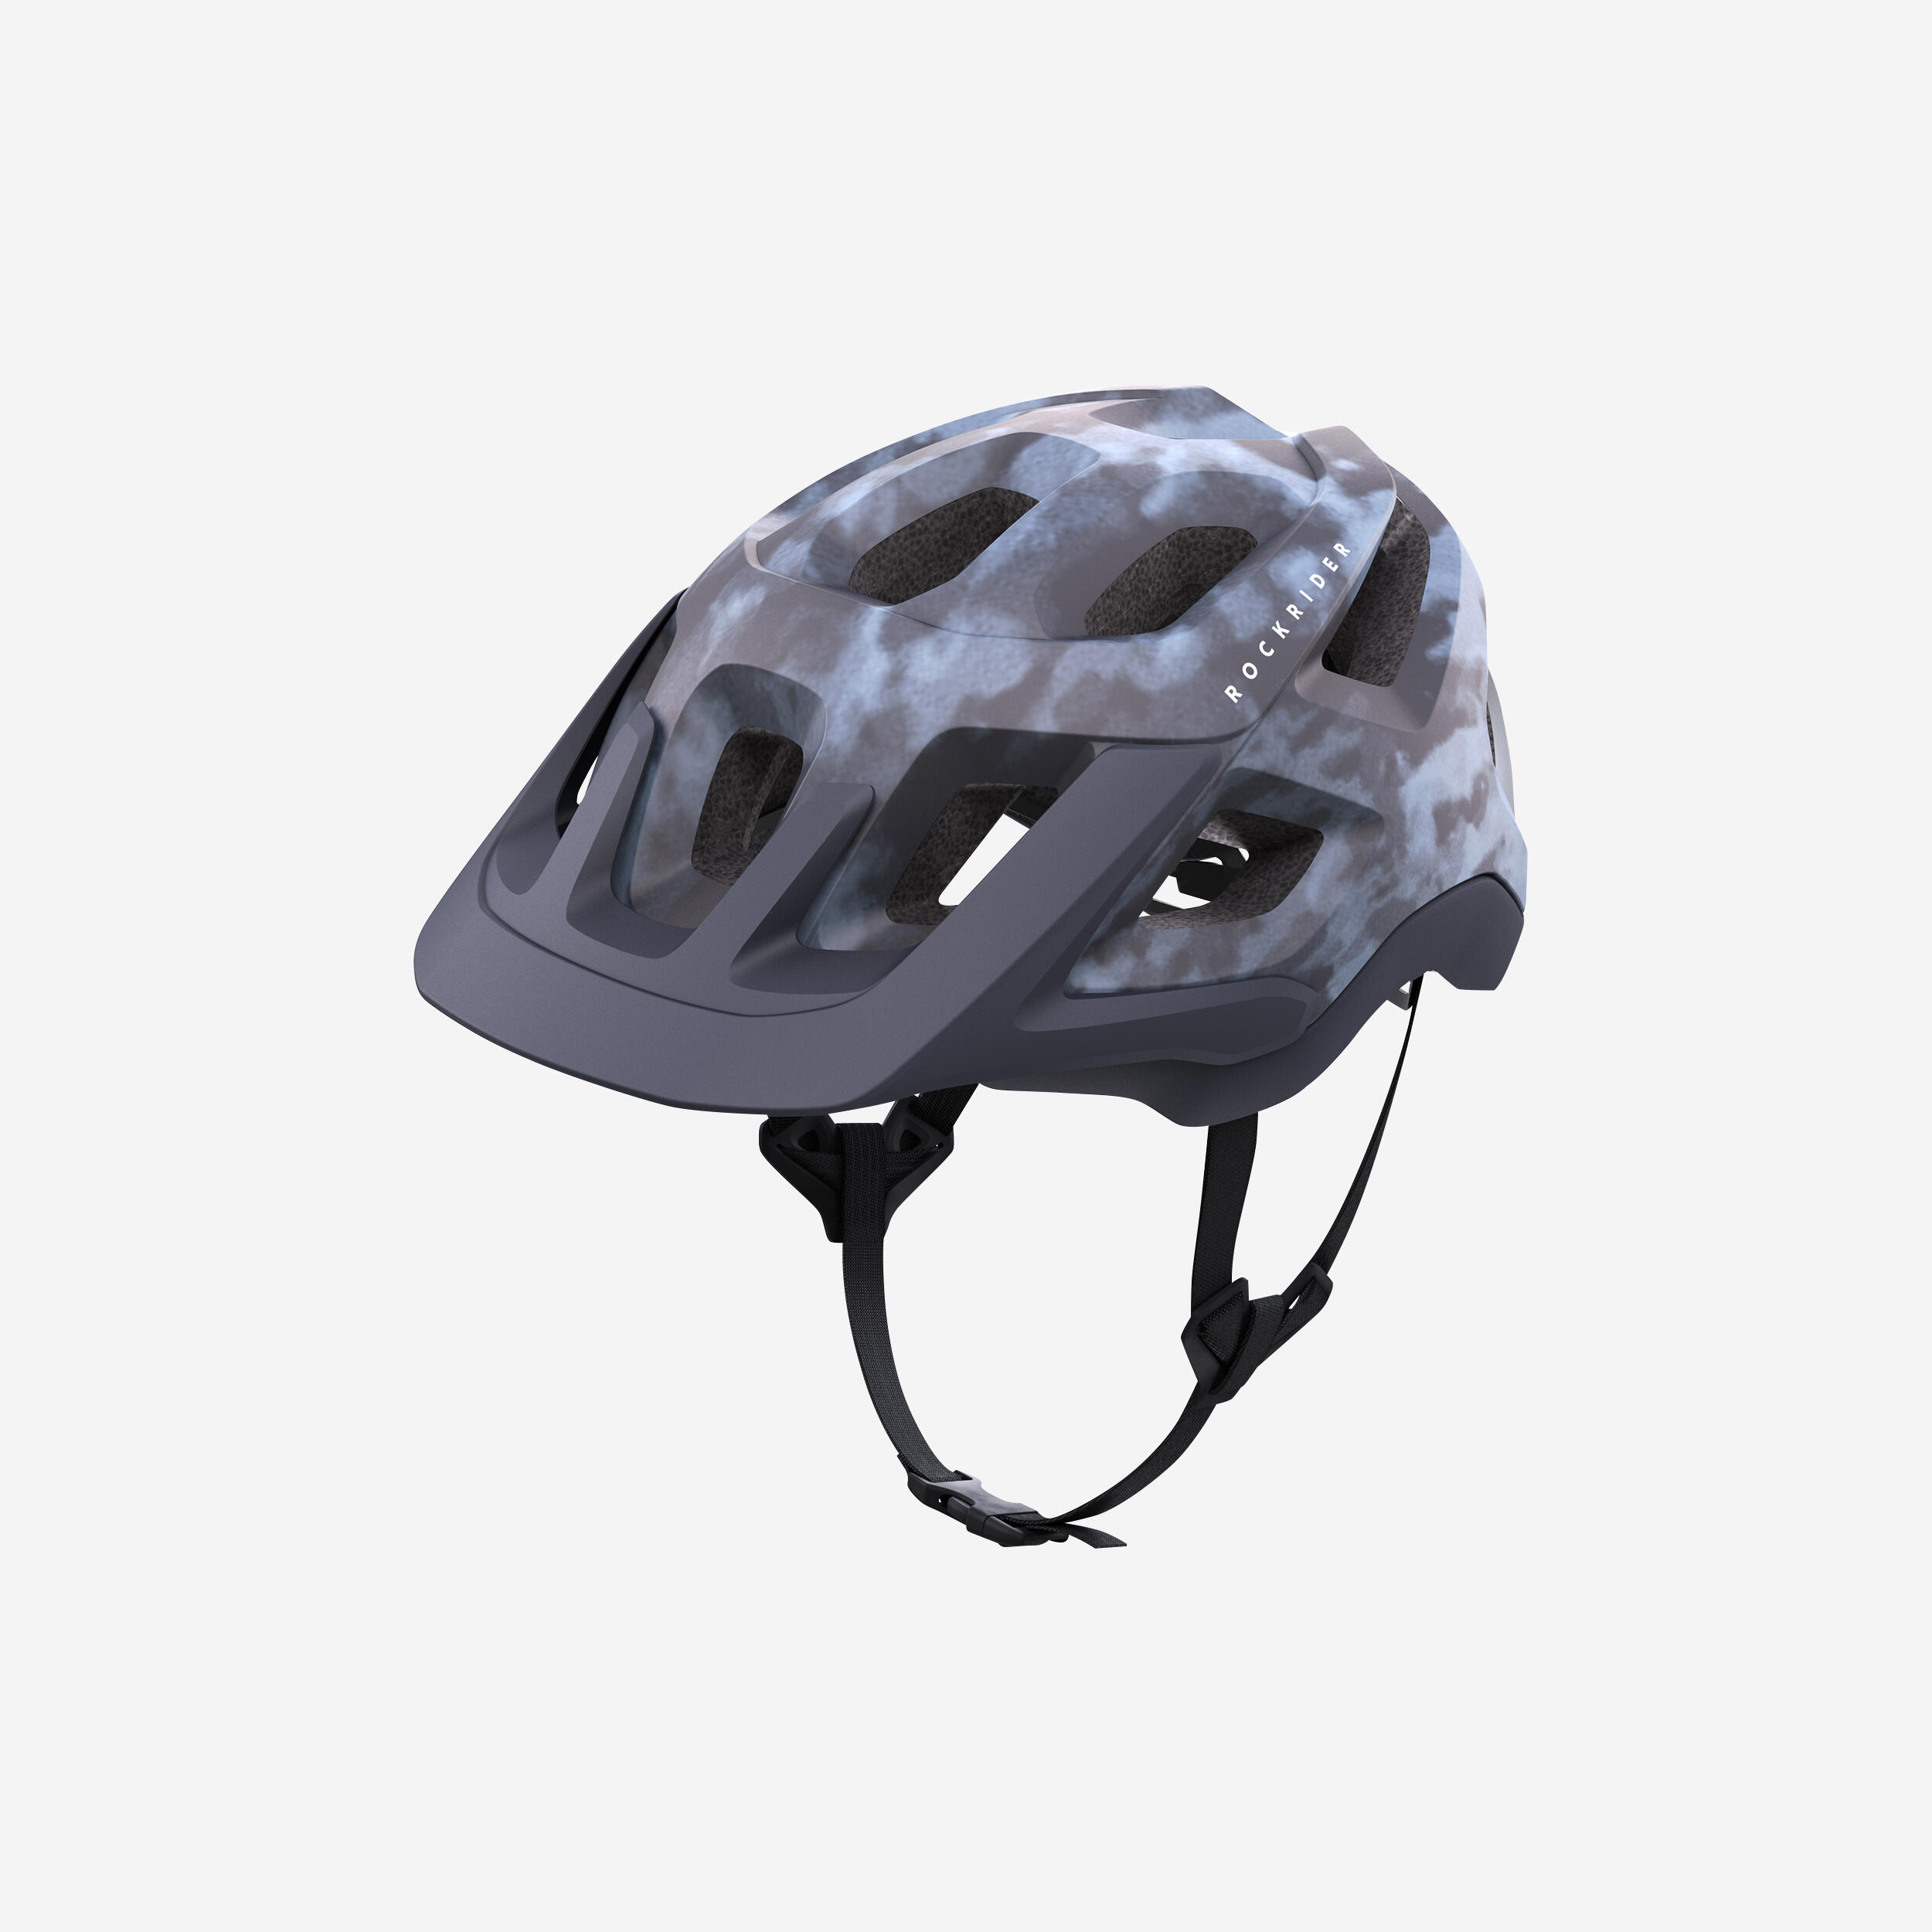 ROCKRIDER Mountain Bike Helmet EXPL 500 - Graphic Blue